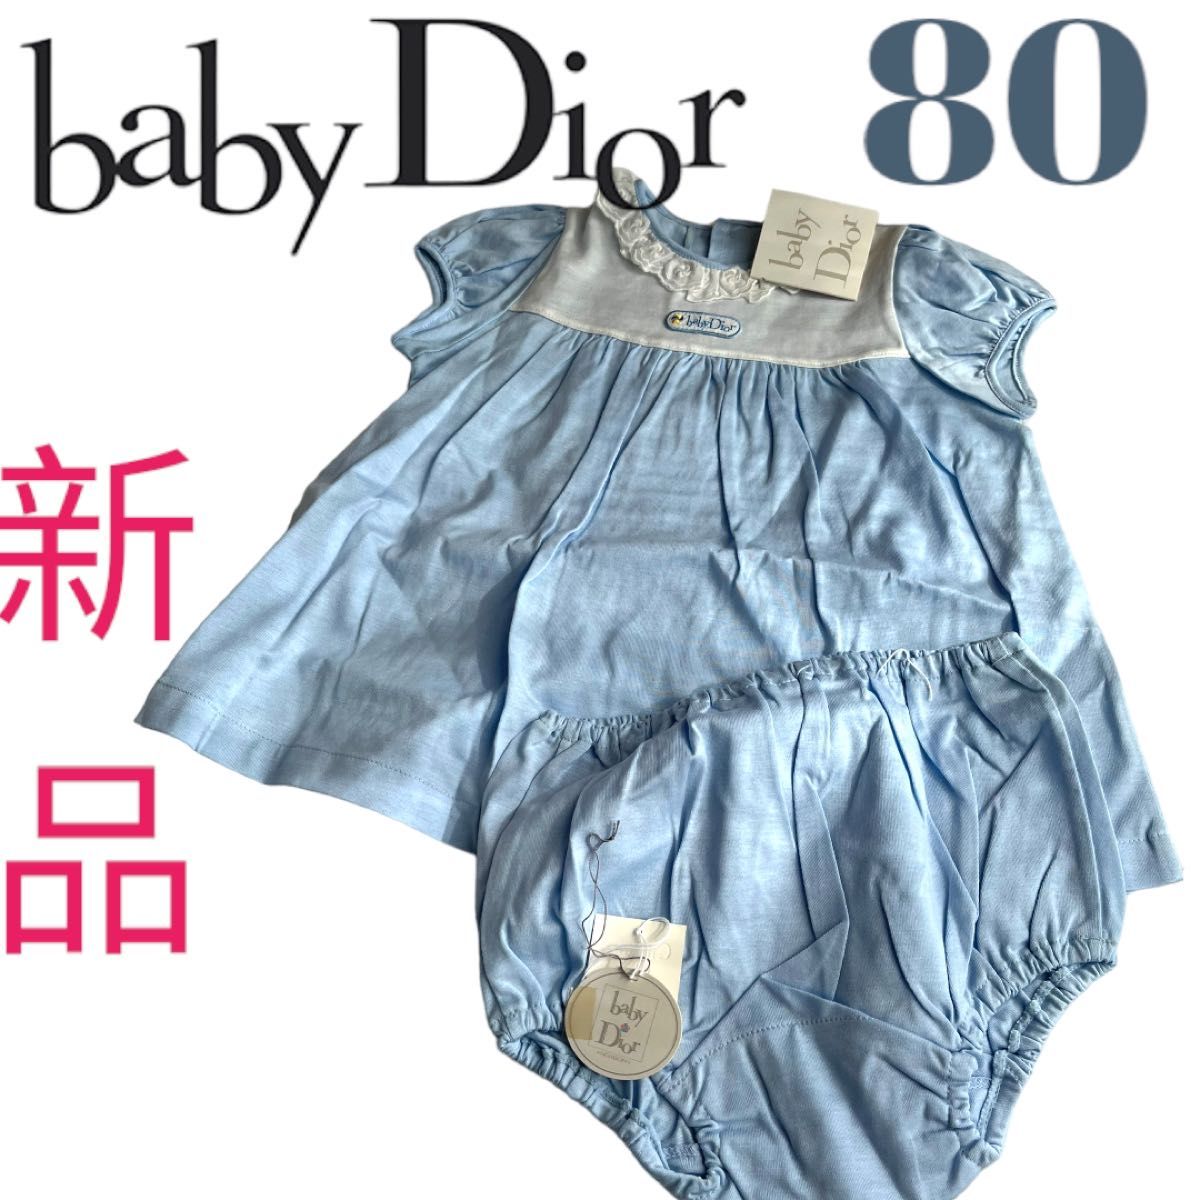 Baby Dior ( ベビーディオール )ロンパース 80 - ロンパース・カバーオール